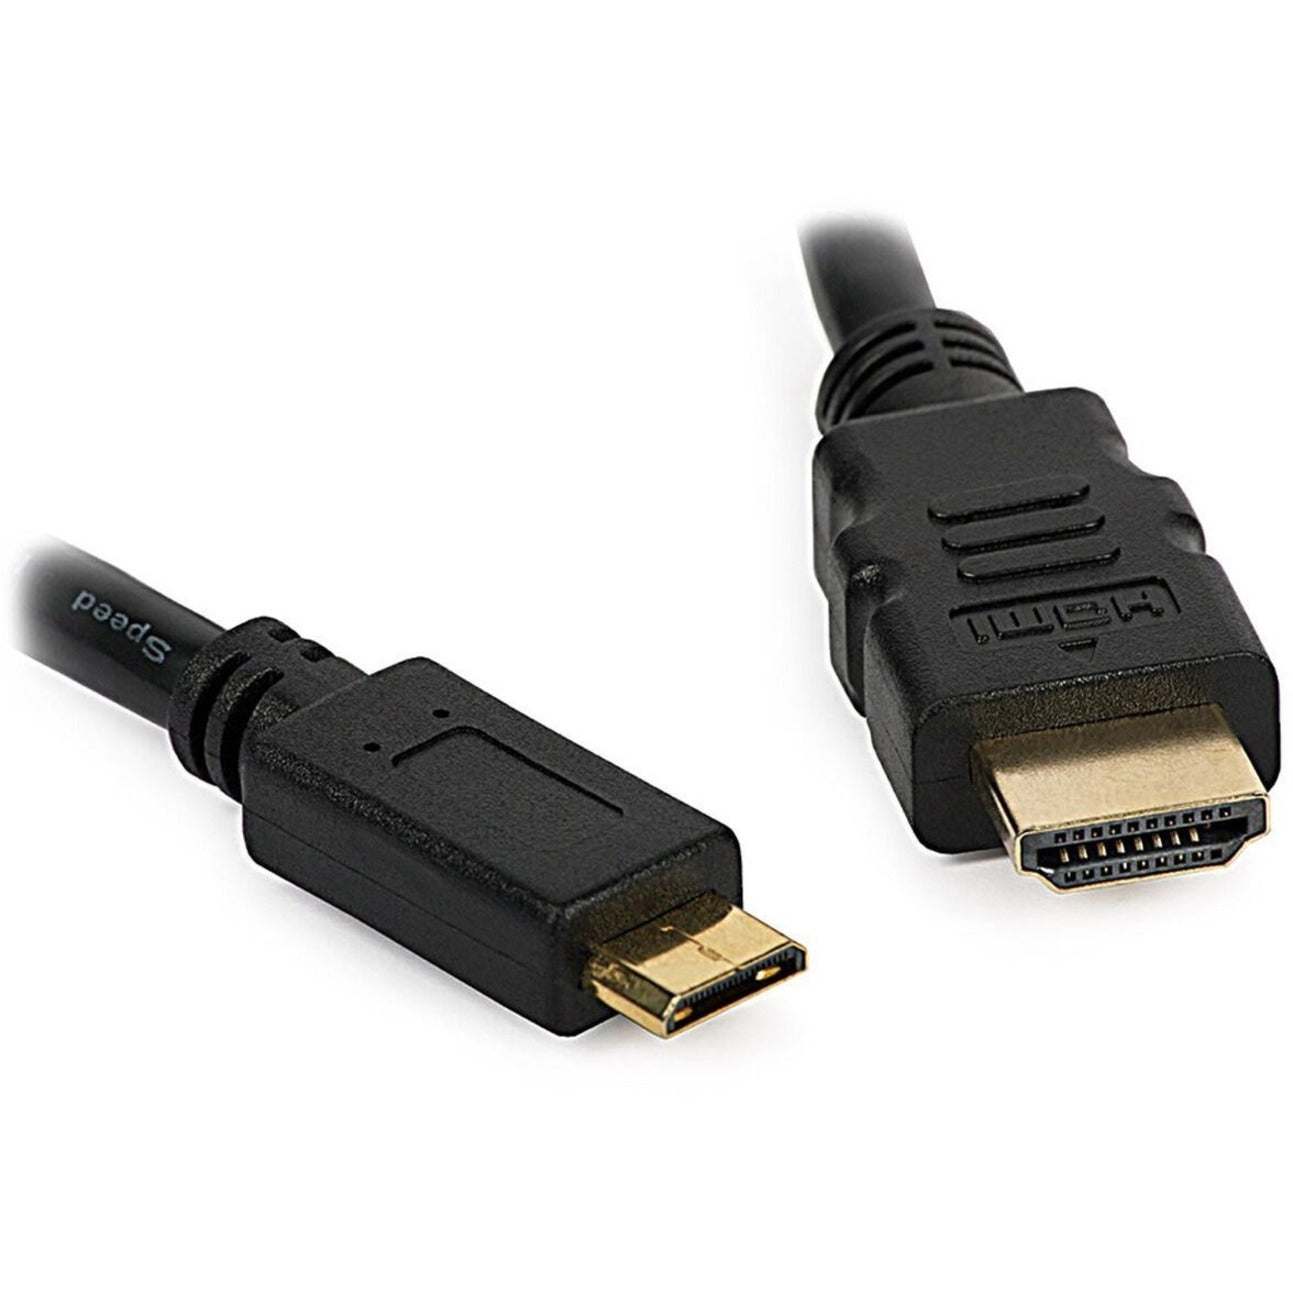 4XEM 4XHDMIMINI6FT 6FT كبل محول Mini HDMI إلى HDMI M/M ، معدل نقل البيانات 10.2 جيجابت في الثانية ، موصلات مطلية بالذهب العلامة التجارية: 4XEM ترجمة العلامة التجارية: فور زد إي إم